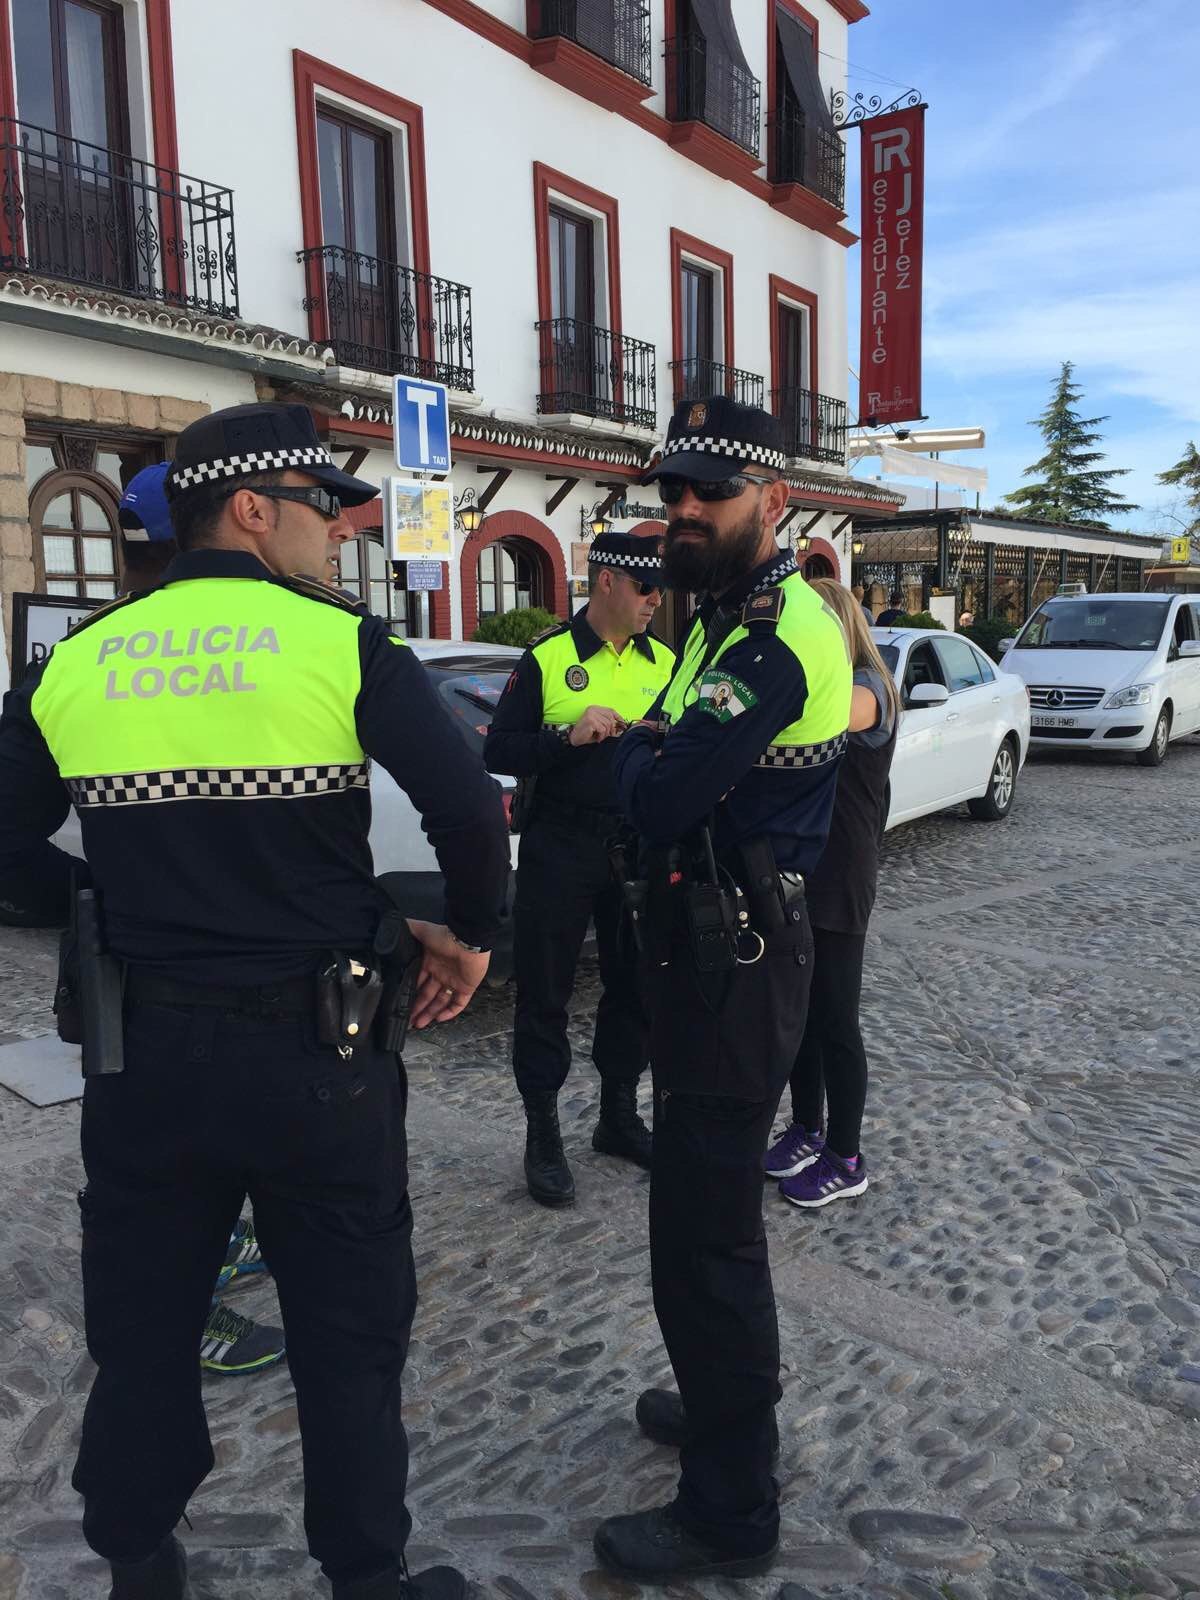 西班牙警察叔叔,谁知道他几岁啊? 龙达